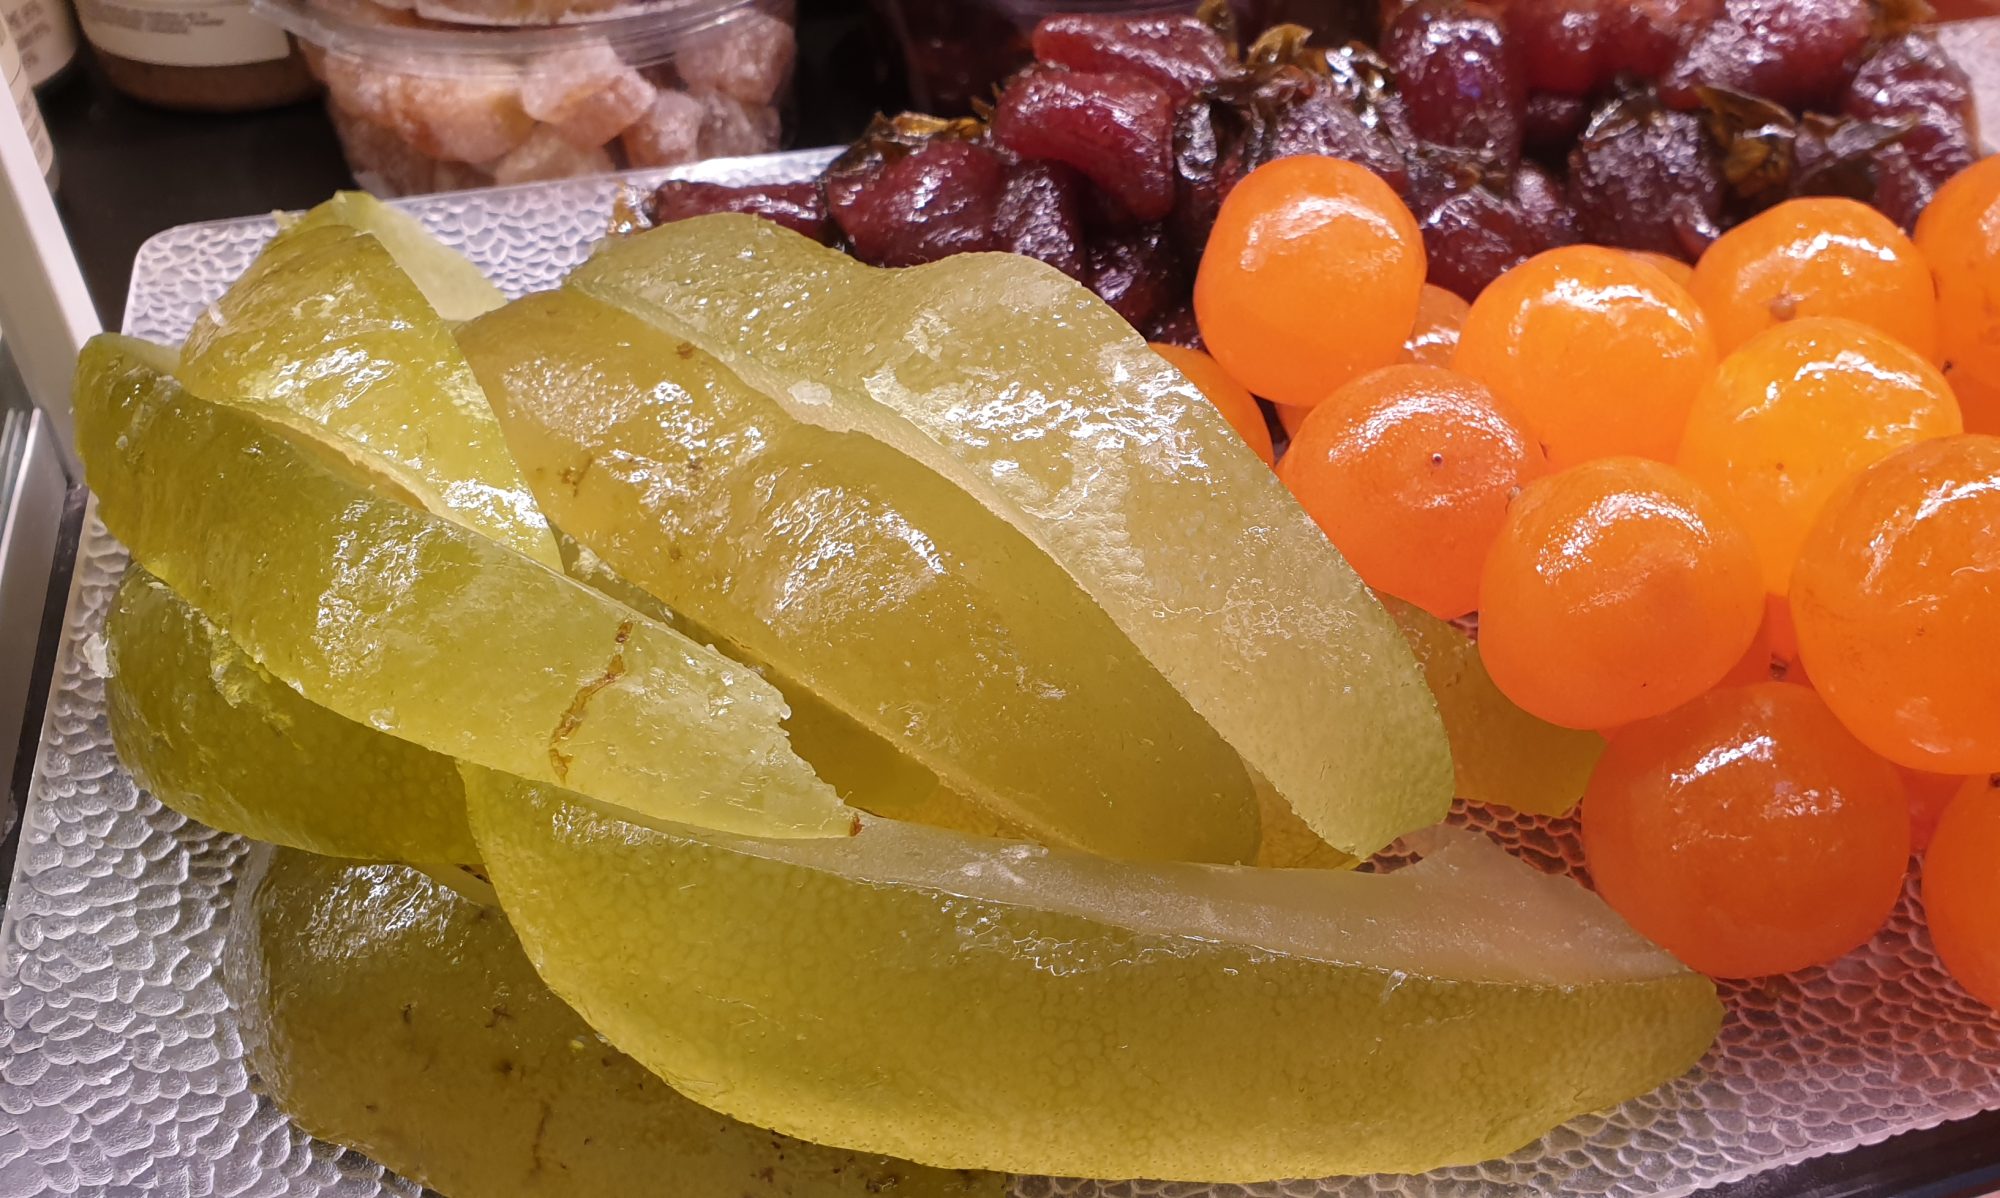 Fruits déguisés pour Noël : dates, pruneaux et pâte d'amande